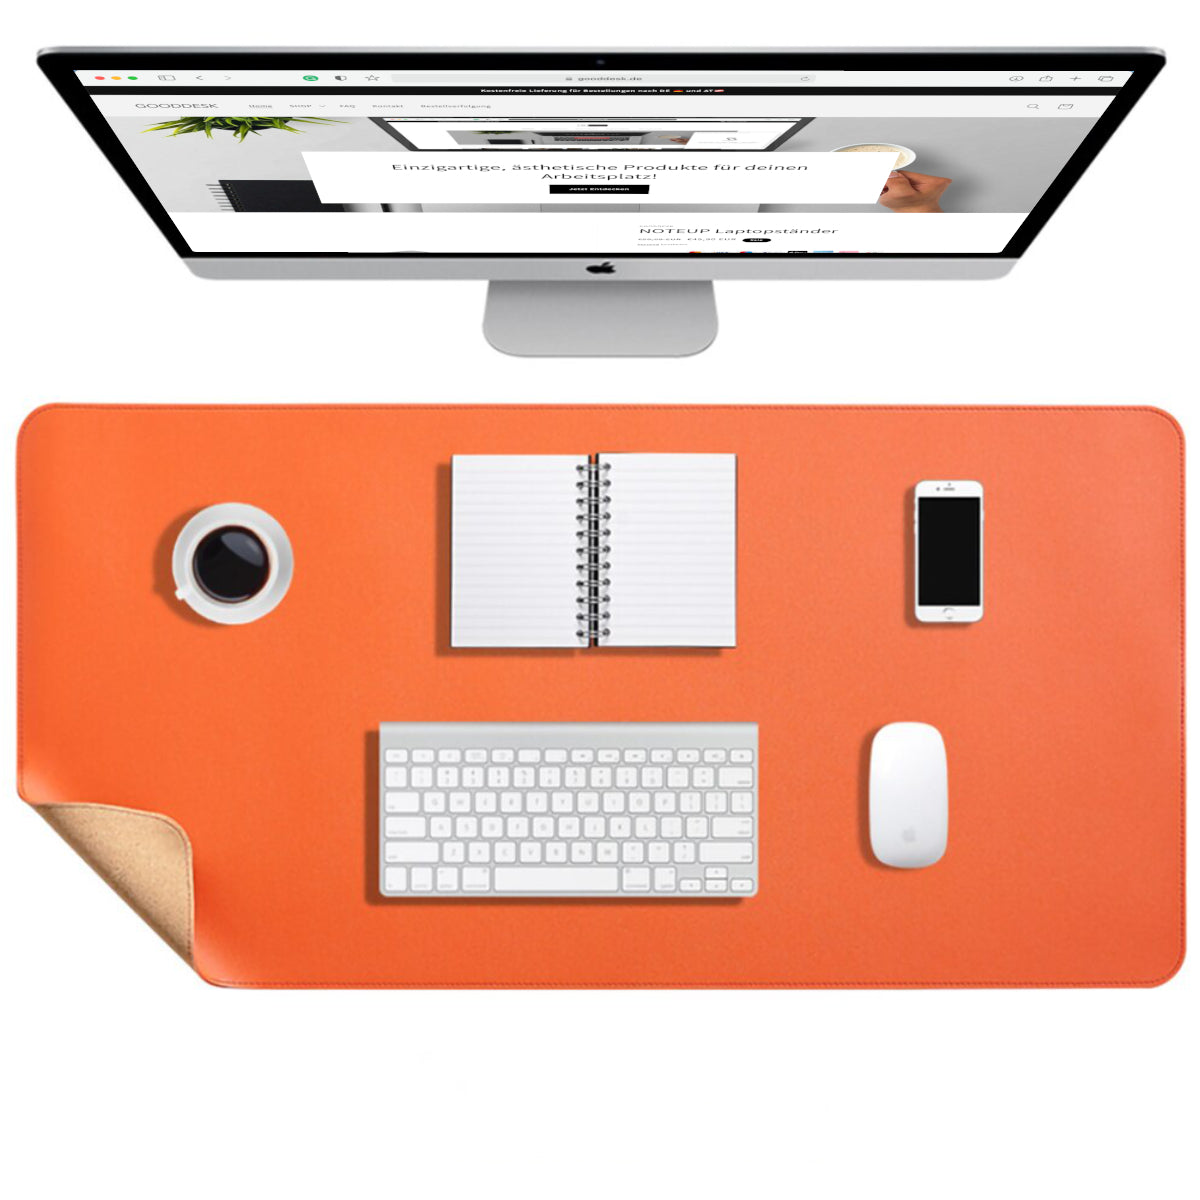 Korkmatte Kork Schreibtischunterlage nachhaltig Eingangsbild shoppen gooddesk orange Wählbild